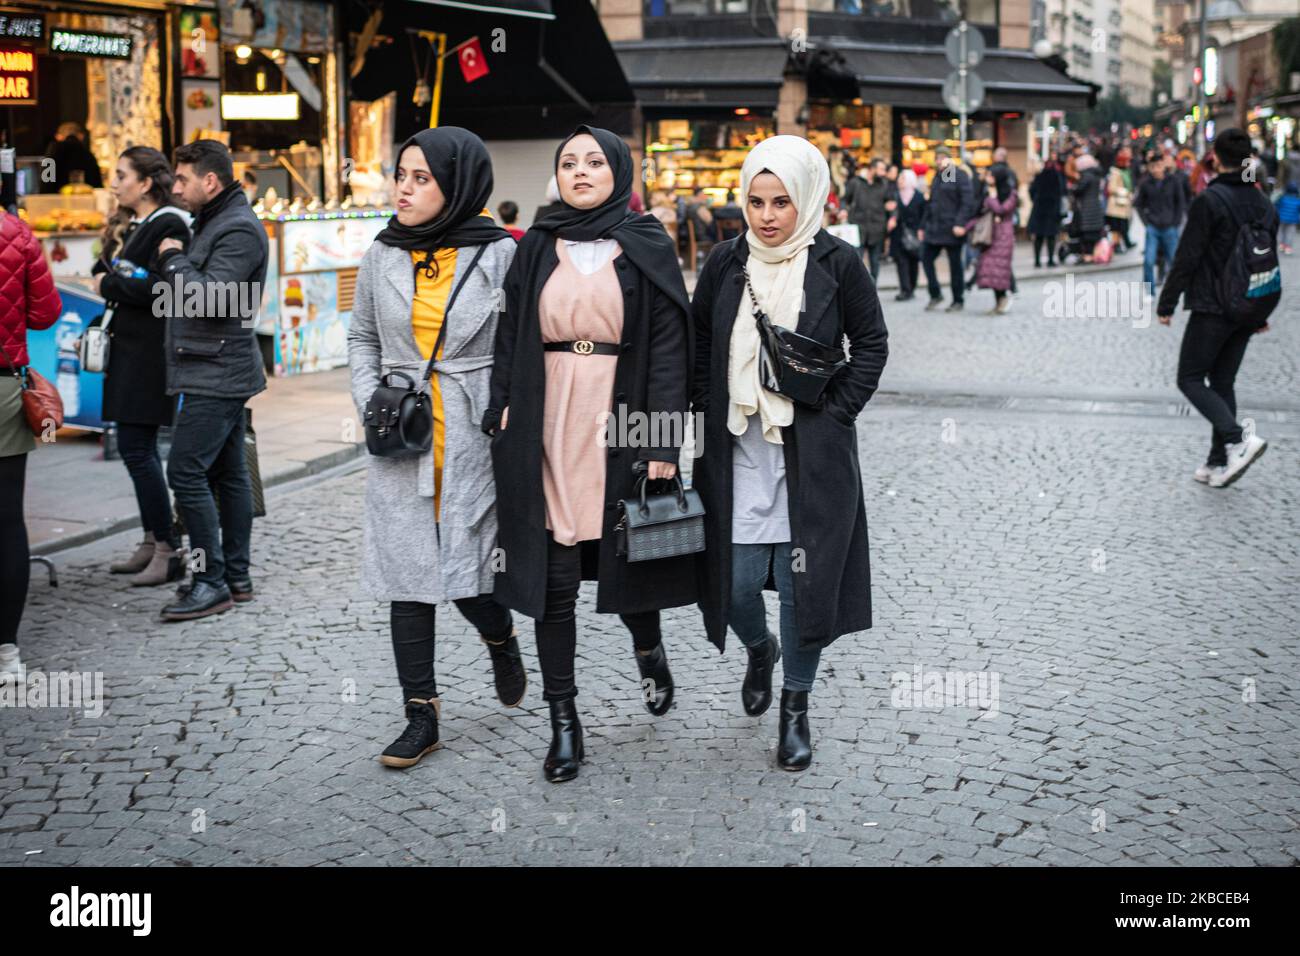 Am 8 2019. Dezember gingen junge verschleierte türkische Frauen im historischen und kommerziellen Viertel Eminonu im Istanbuler Stadtteil Fatih zum Einkaufen auf Straßenmärkten und Basaren, da die Wirtschaft vor dem neuen Jahr stabil blieb. (Foto von Diego Cupolo/NurPhoto) Stockfoto